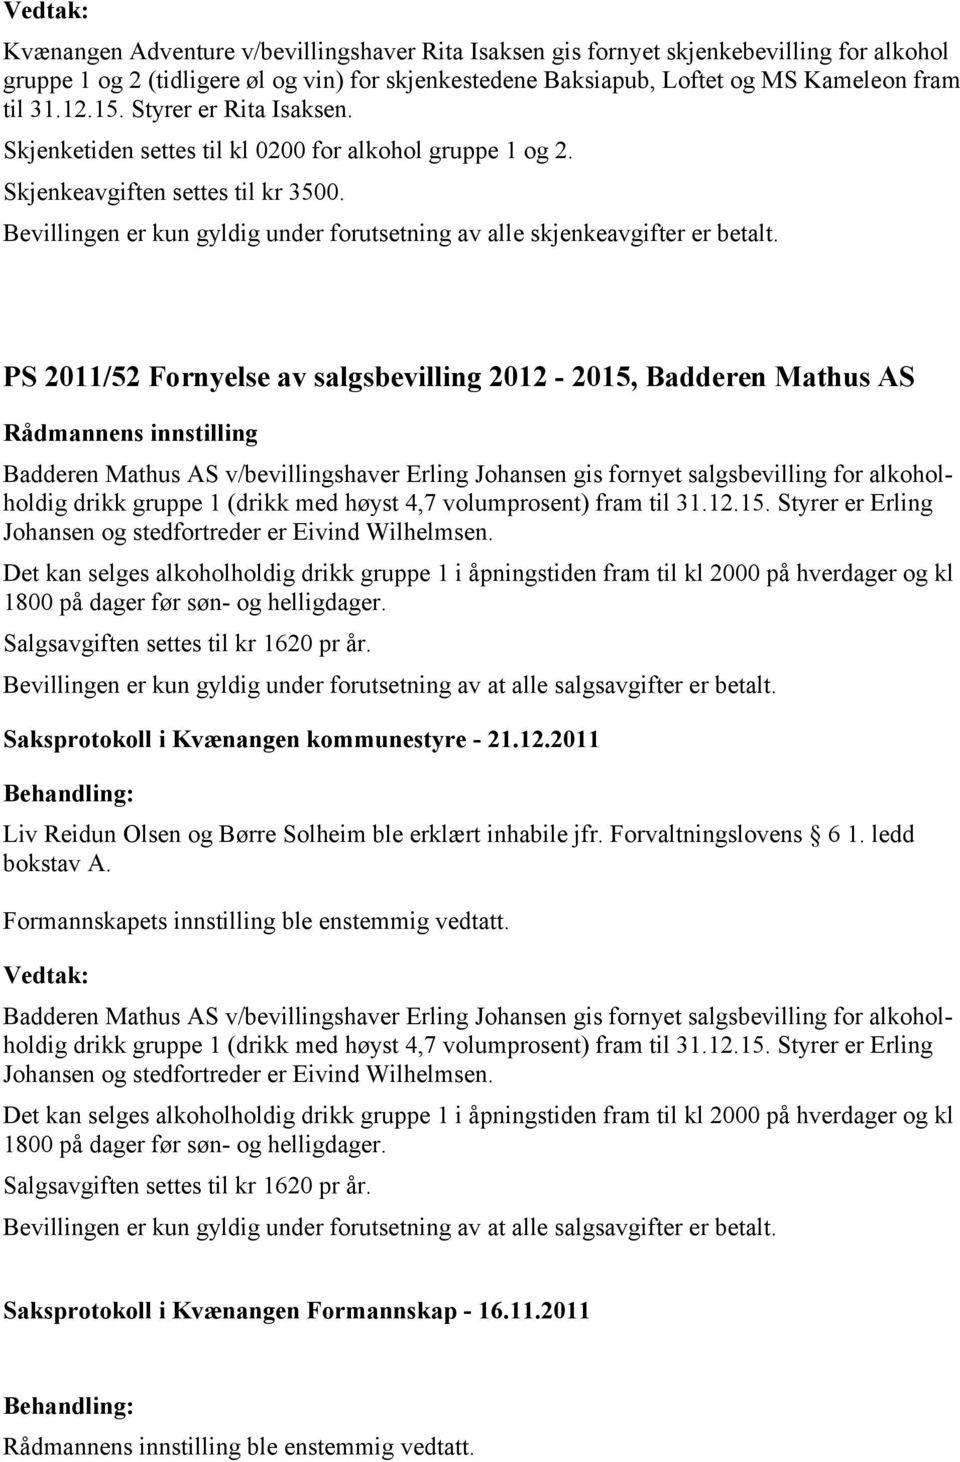 PS 2011/52 Fornyelse av salgsbevilling 2012-2015, Badderen Mathus AS Badderen Mathus AS v/bevillingshaver Erling Johansen gis fornyet salgsbevilling for alkoholholdig drikk gruppe 1 (drikk med høyst